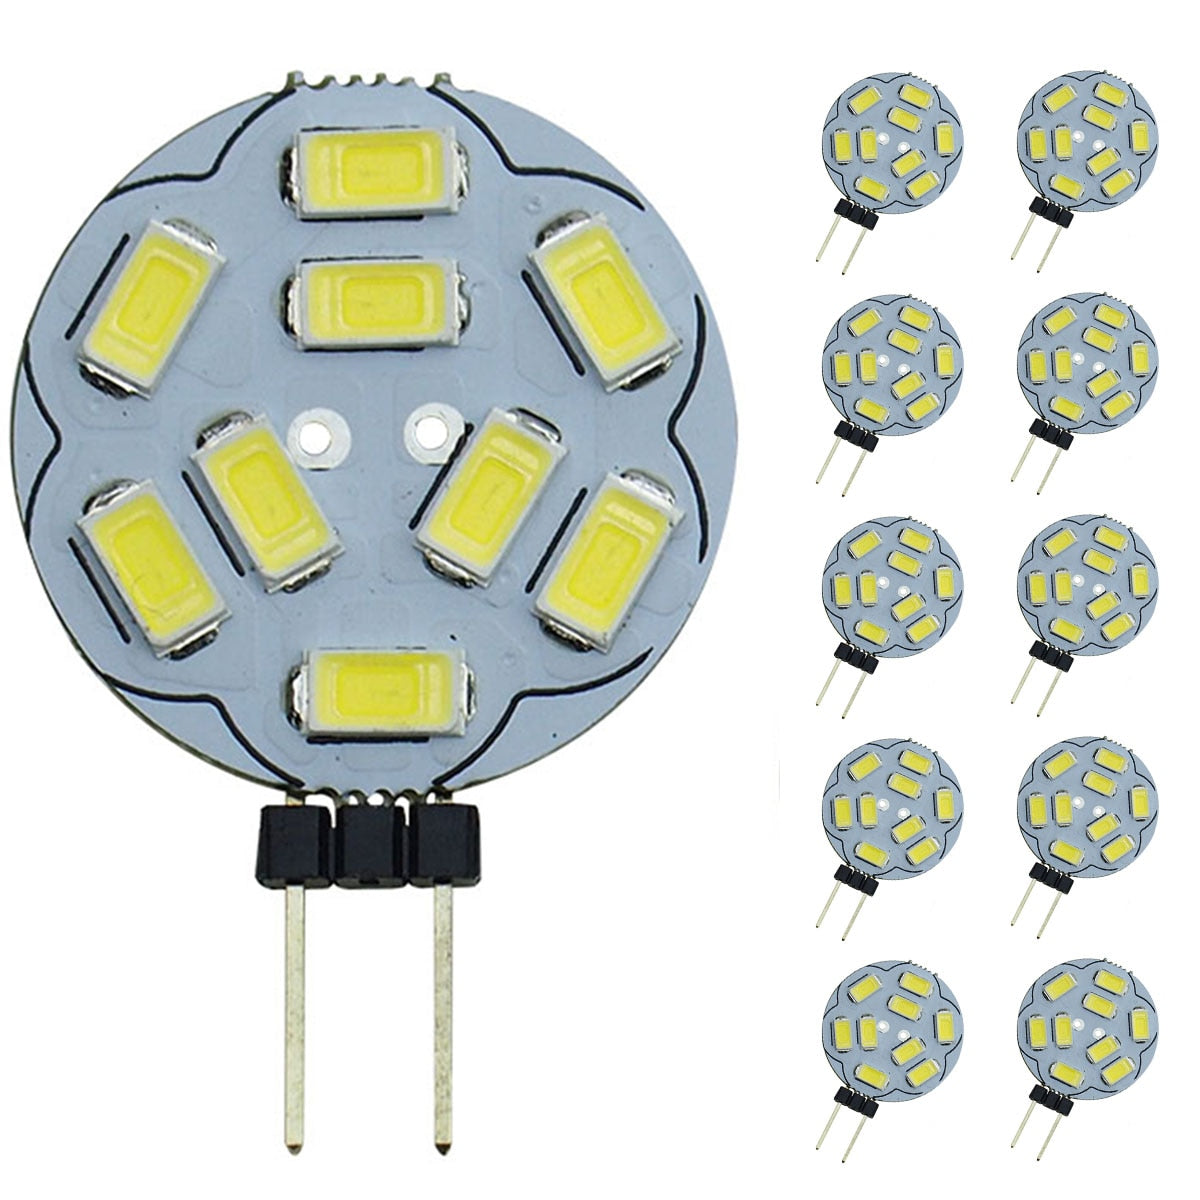 10pcs / lots G4 LED Light Bulbs 9 SMD 5730 AC/DC 12V G4 Bi-Pin Base LED Light Bulb Replacement Halogen Bulb 20W,Cool White 6000K